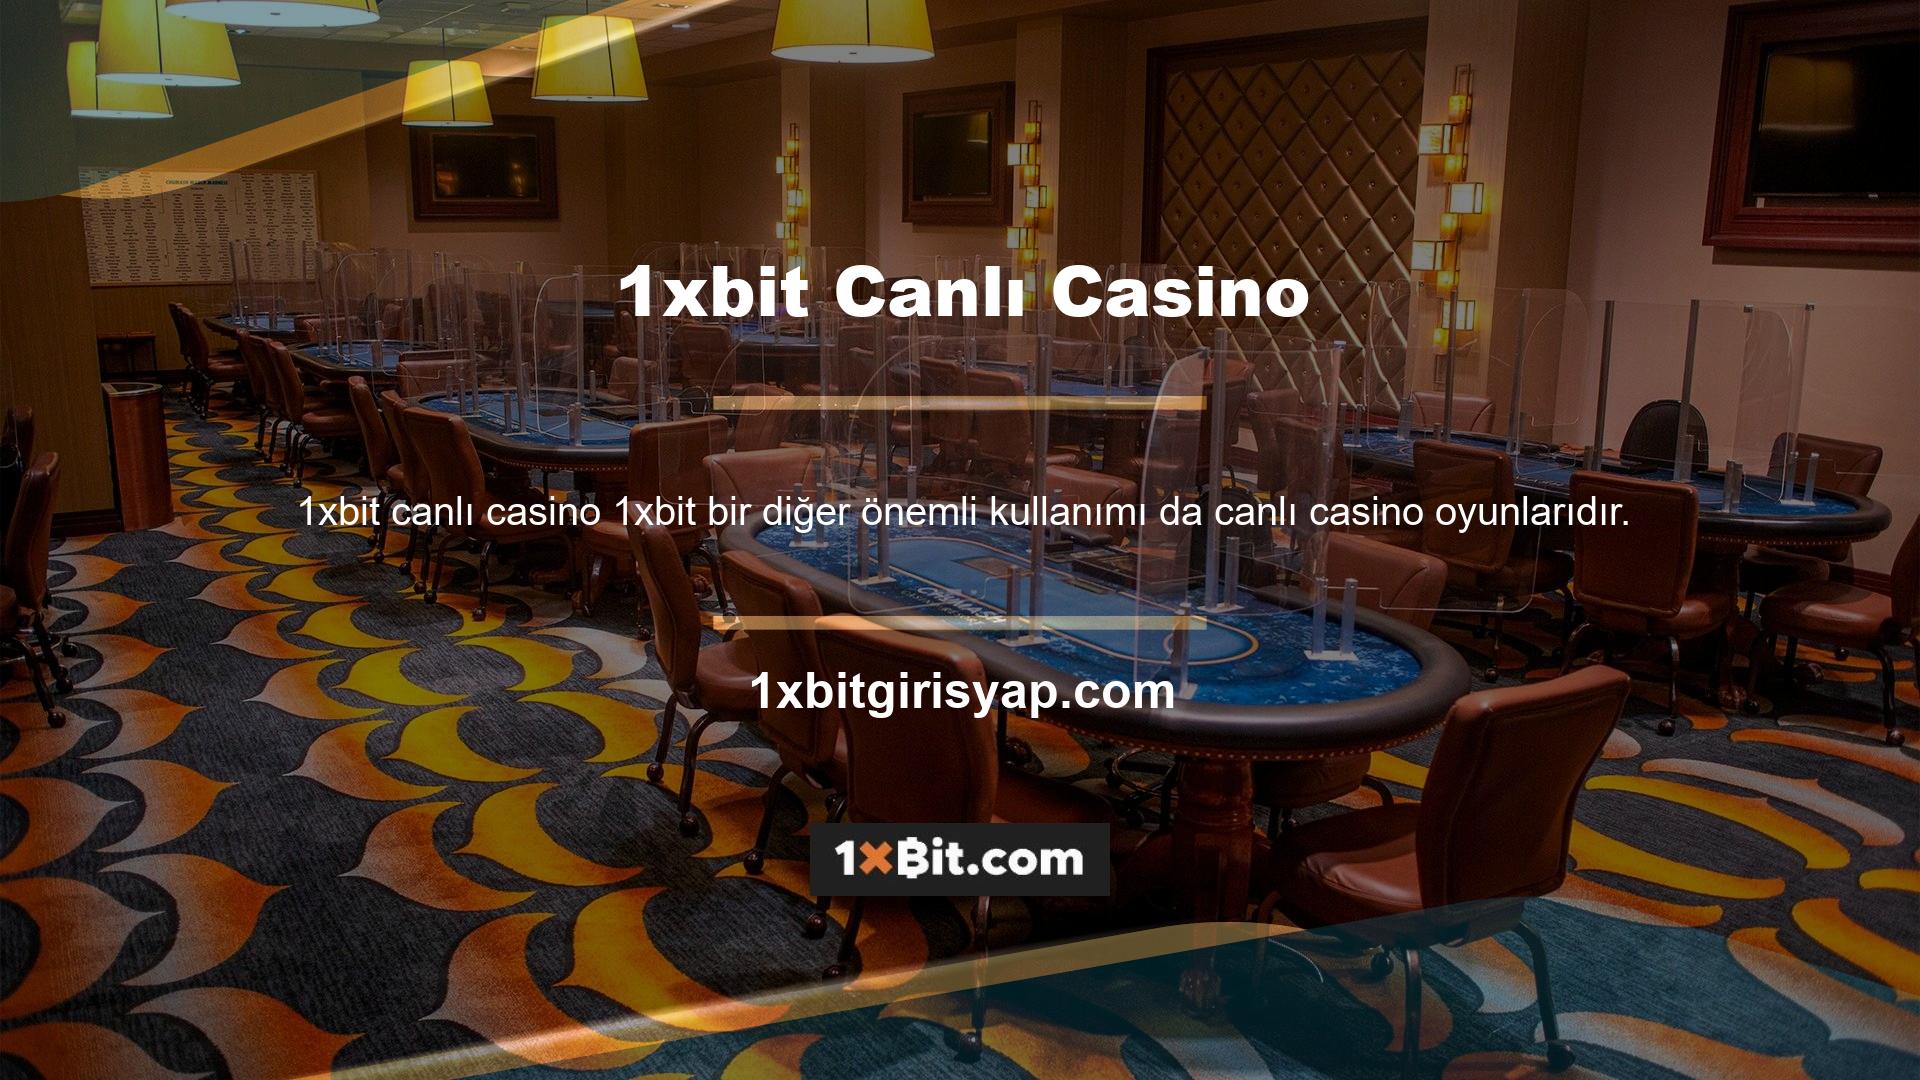 Canlı casino deneyimimiz rulet, blackjack ve bakara gibi popüler masa oyunlarına erişim sunar